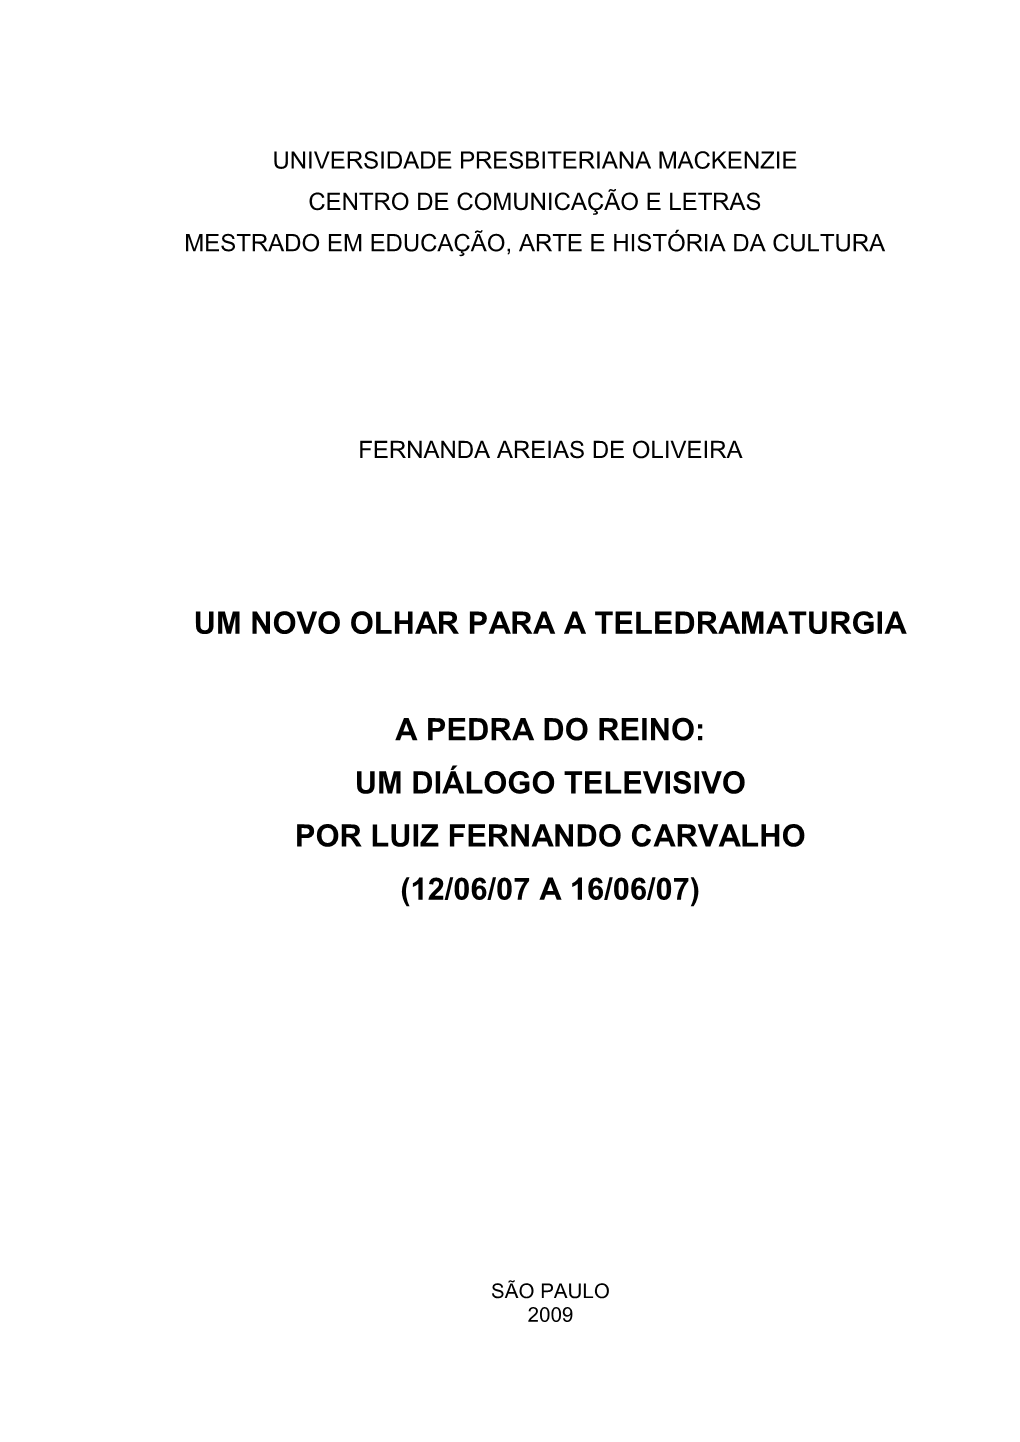 Um Diálogo Televisivo Por Luiz Fernando Carvalho (12/06/07 a 16/06/07)